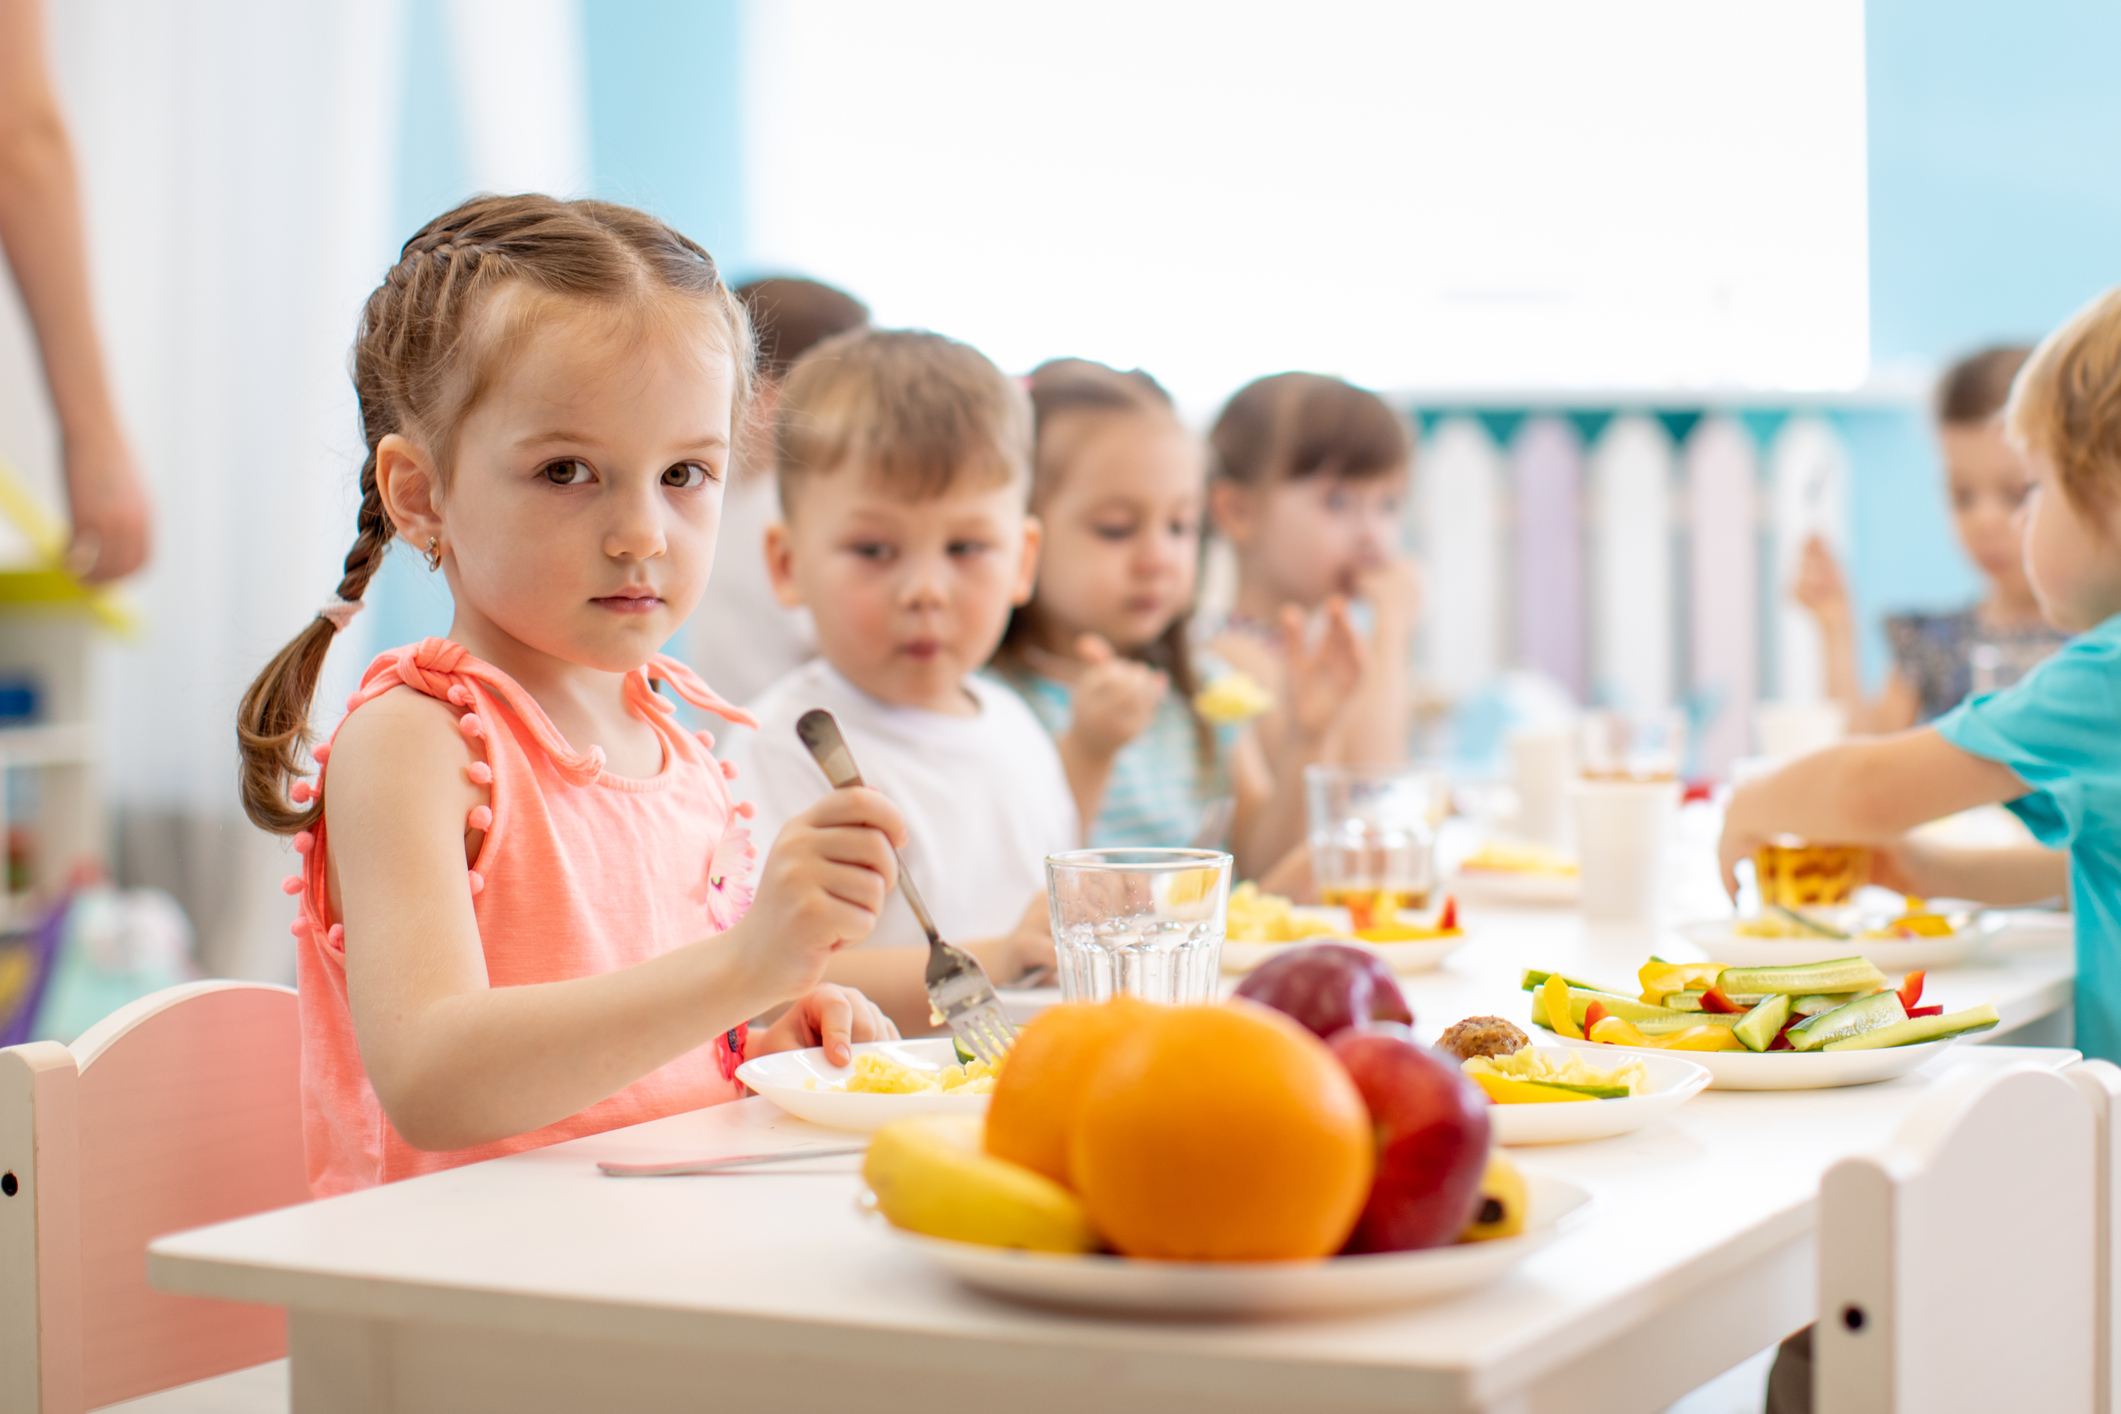 Rząd planuje realizację programów promujących zdrowe nawyki żywieniowe wśród uczniów w roku szkolnym 2021/2022 – przyjęto projekt rozporządzenia Rady Ministrów